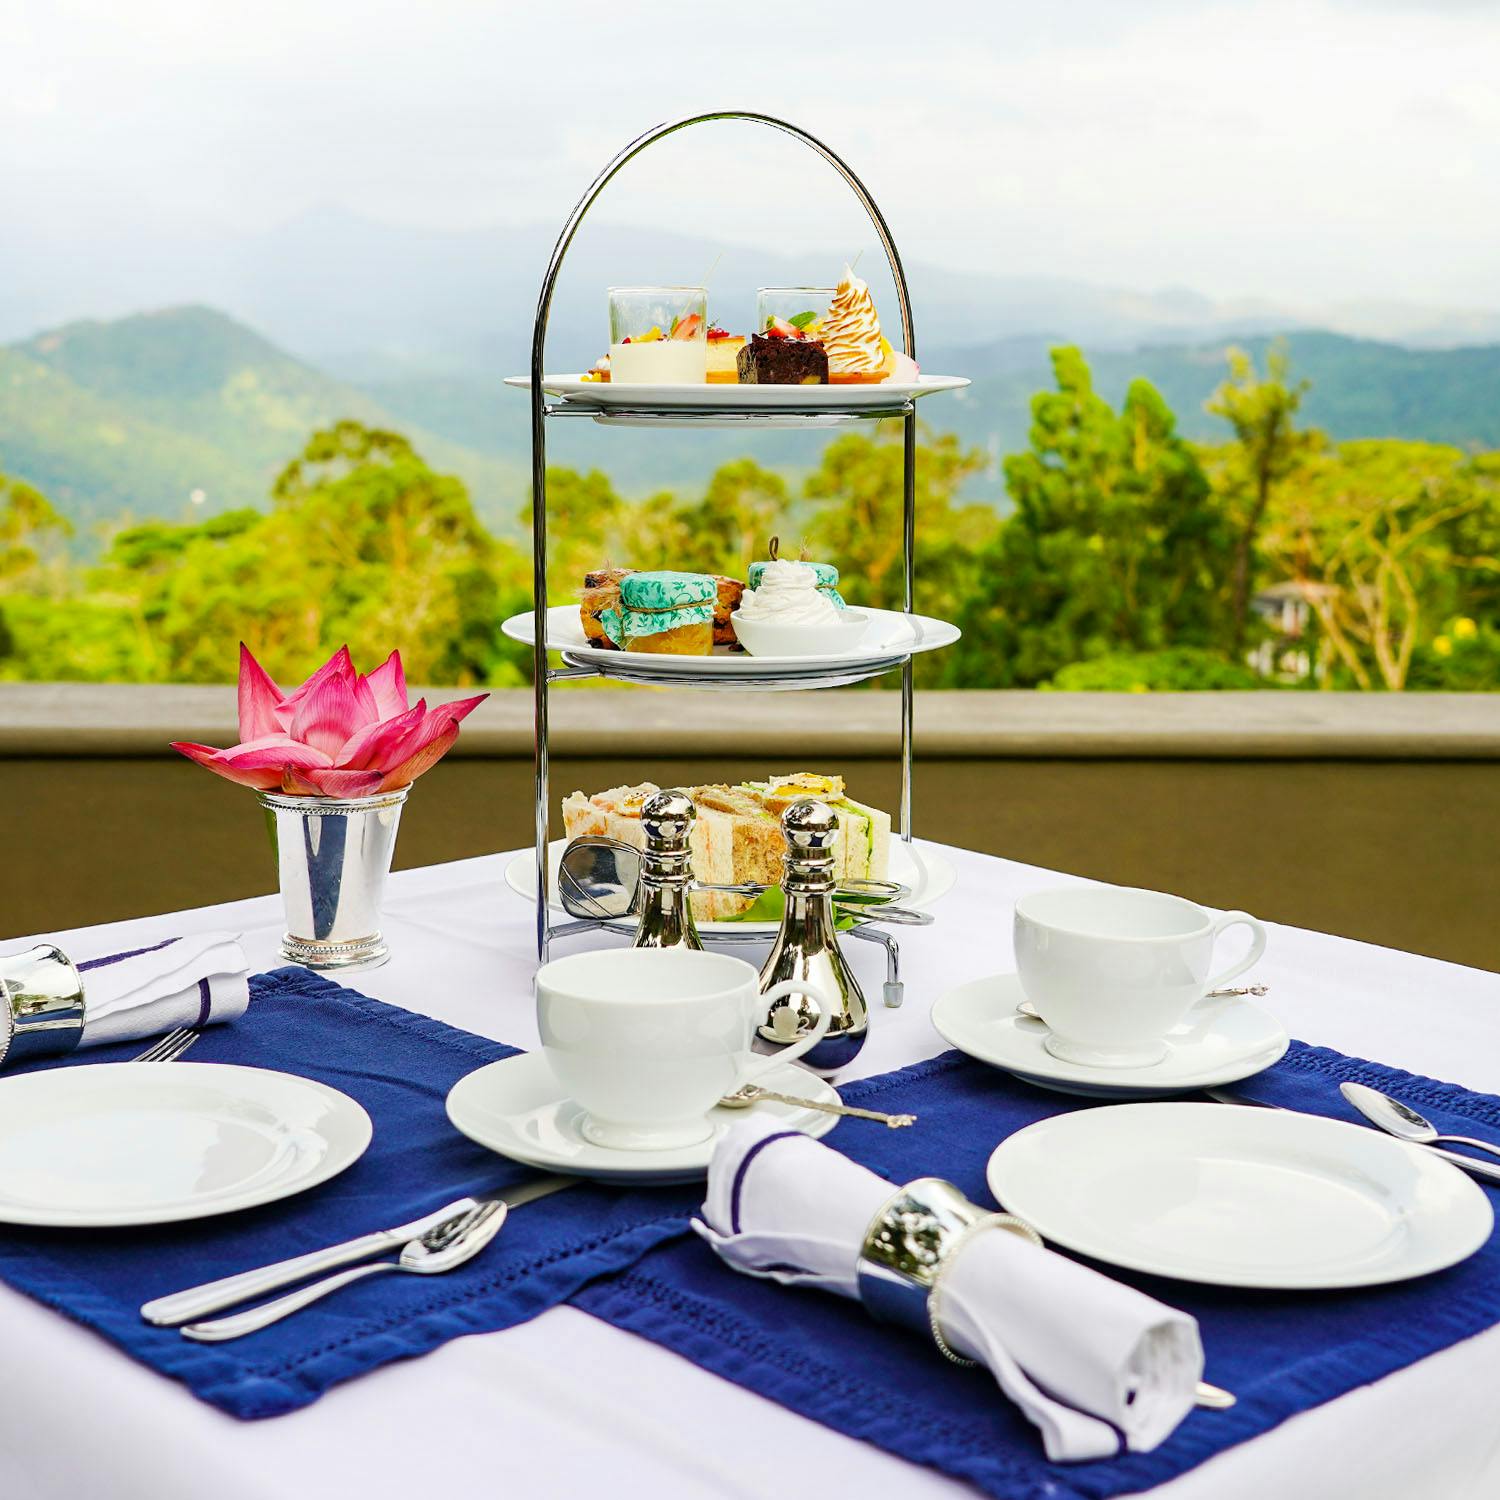 High tea in Kandy Sri Lanka overlooking Hanthana Mountain Range